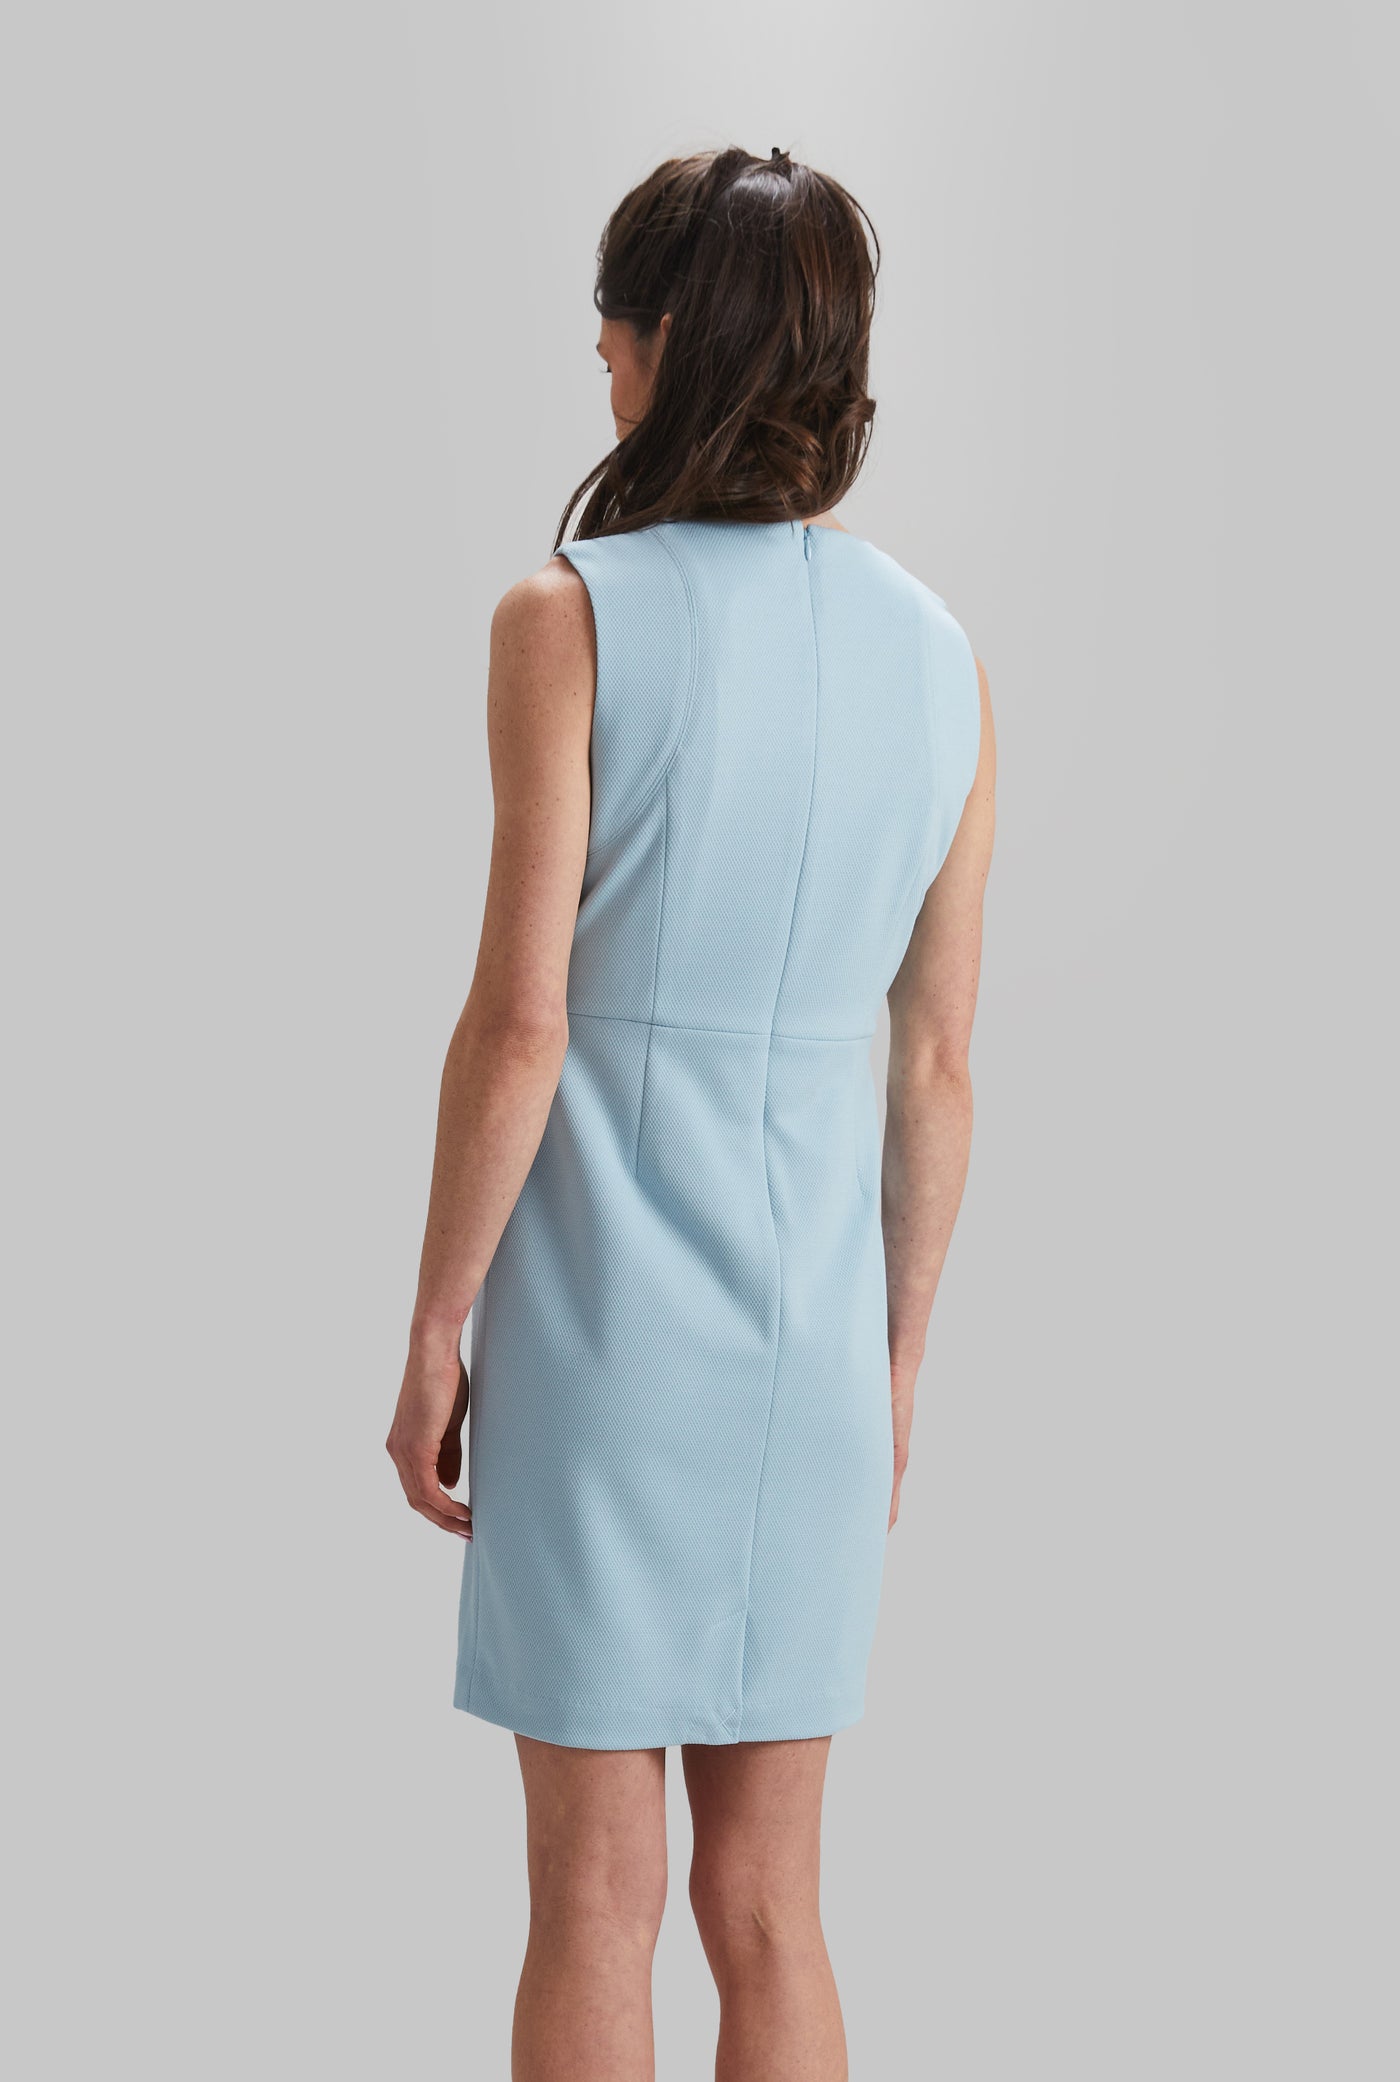 Solstice Pique Knit Hayden Dress